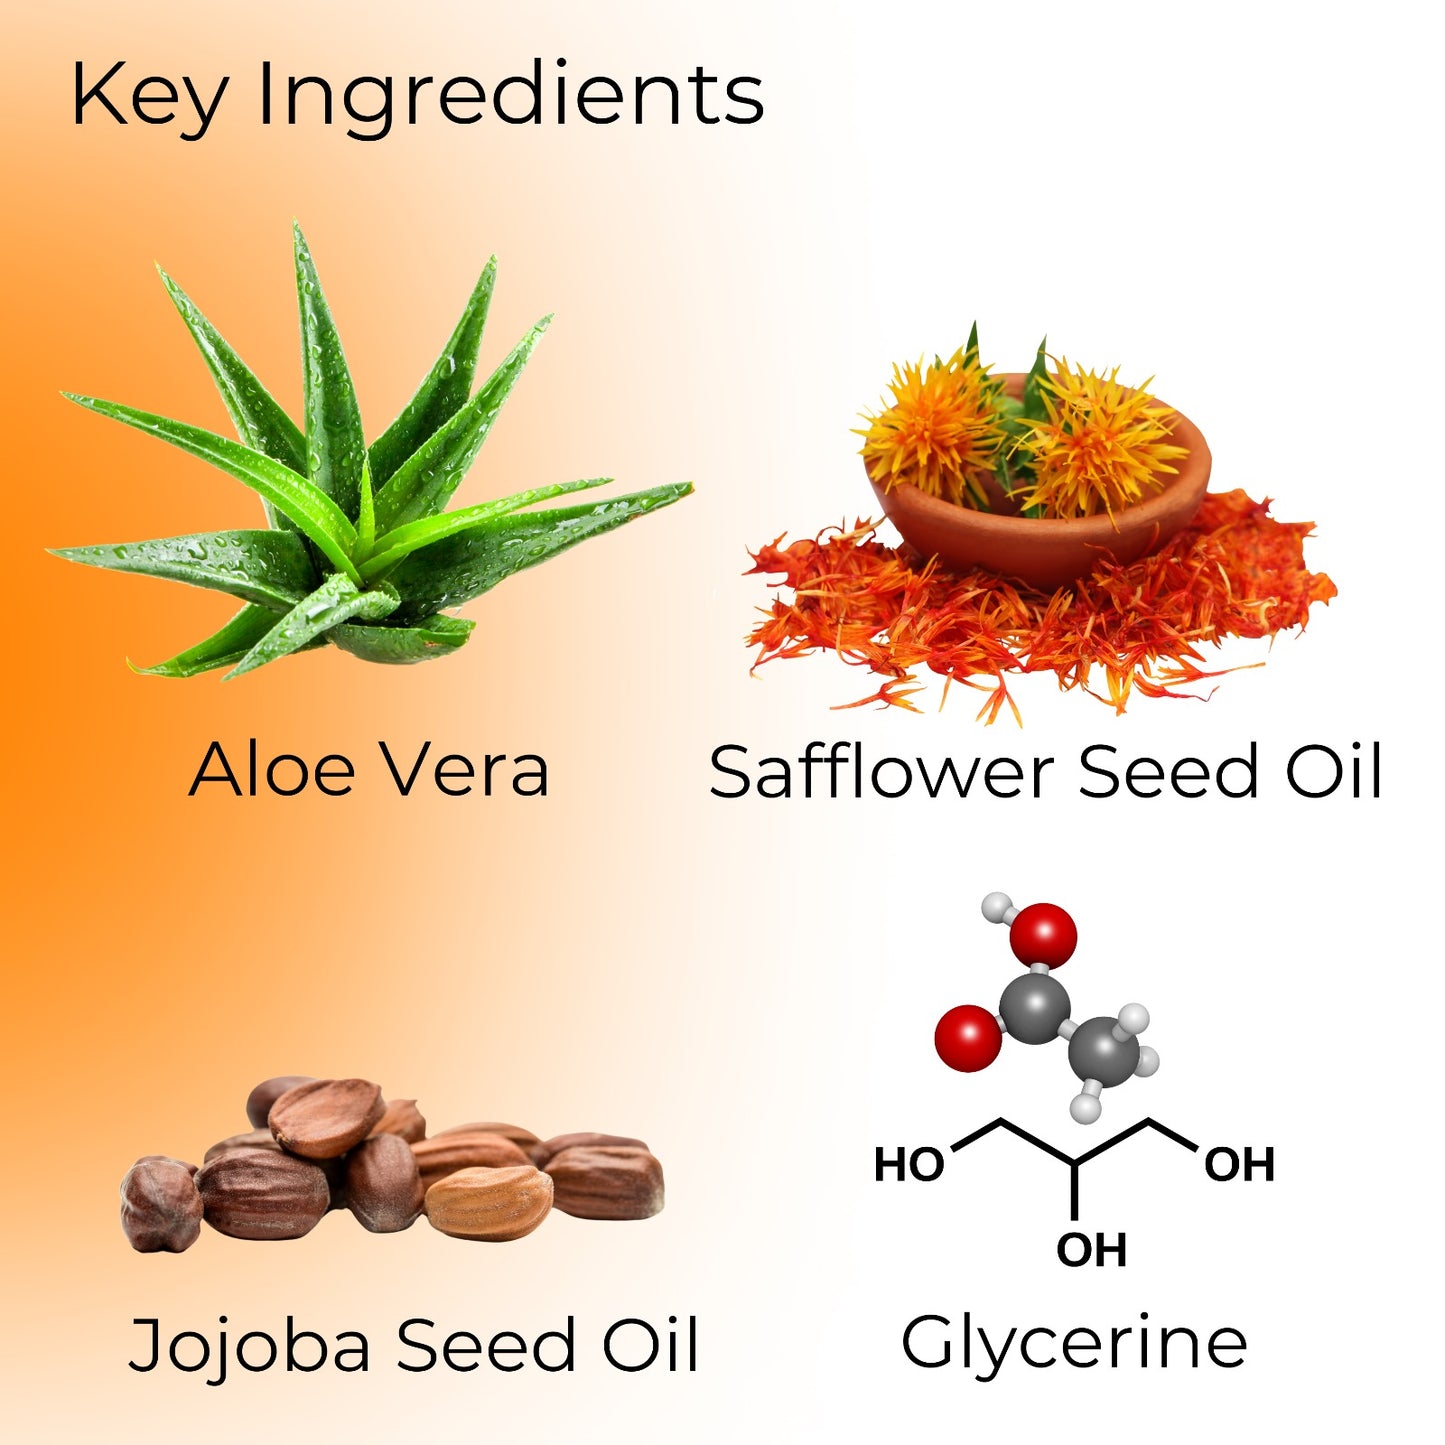 Key ingredients are Aloe Vera, Safflower Seed Oil, Jojoba Seed Oil, and Glycerine